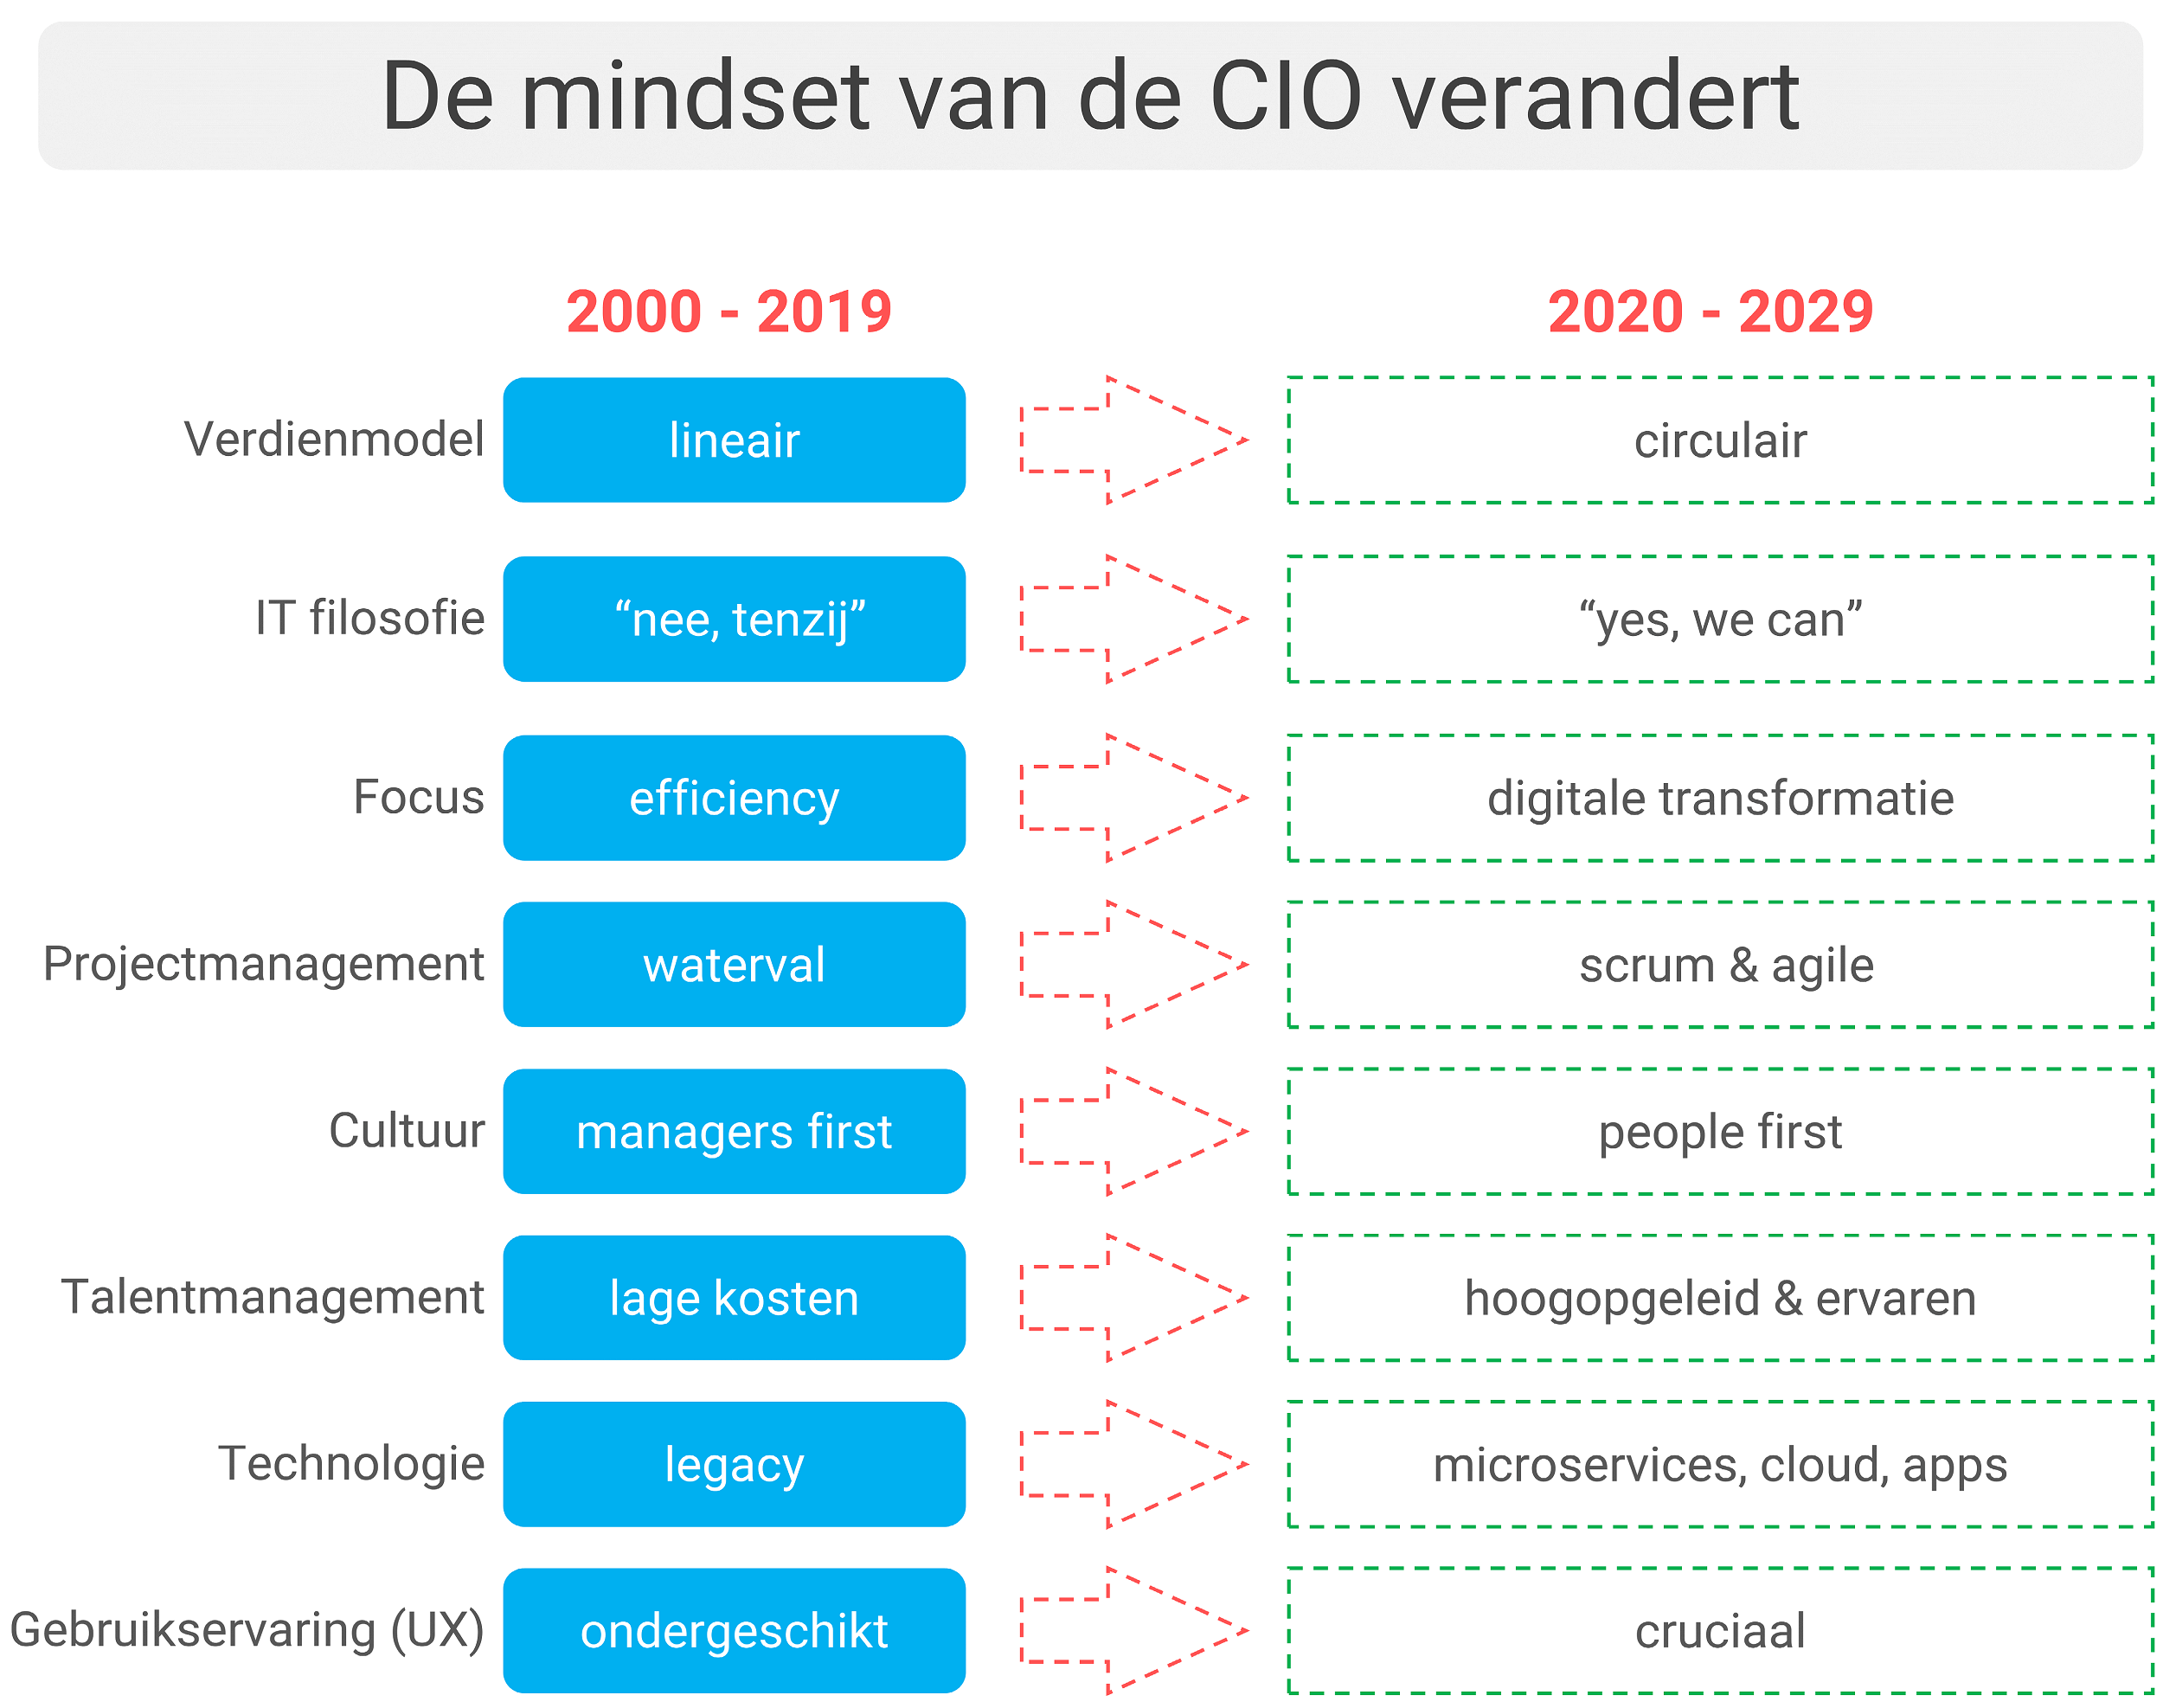 De mindset van de CIO